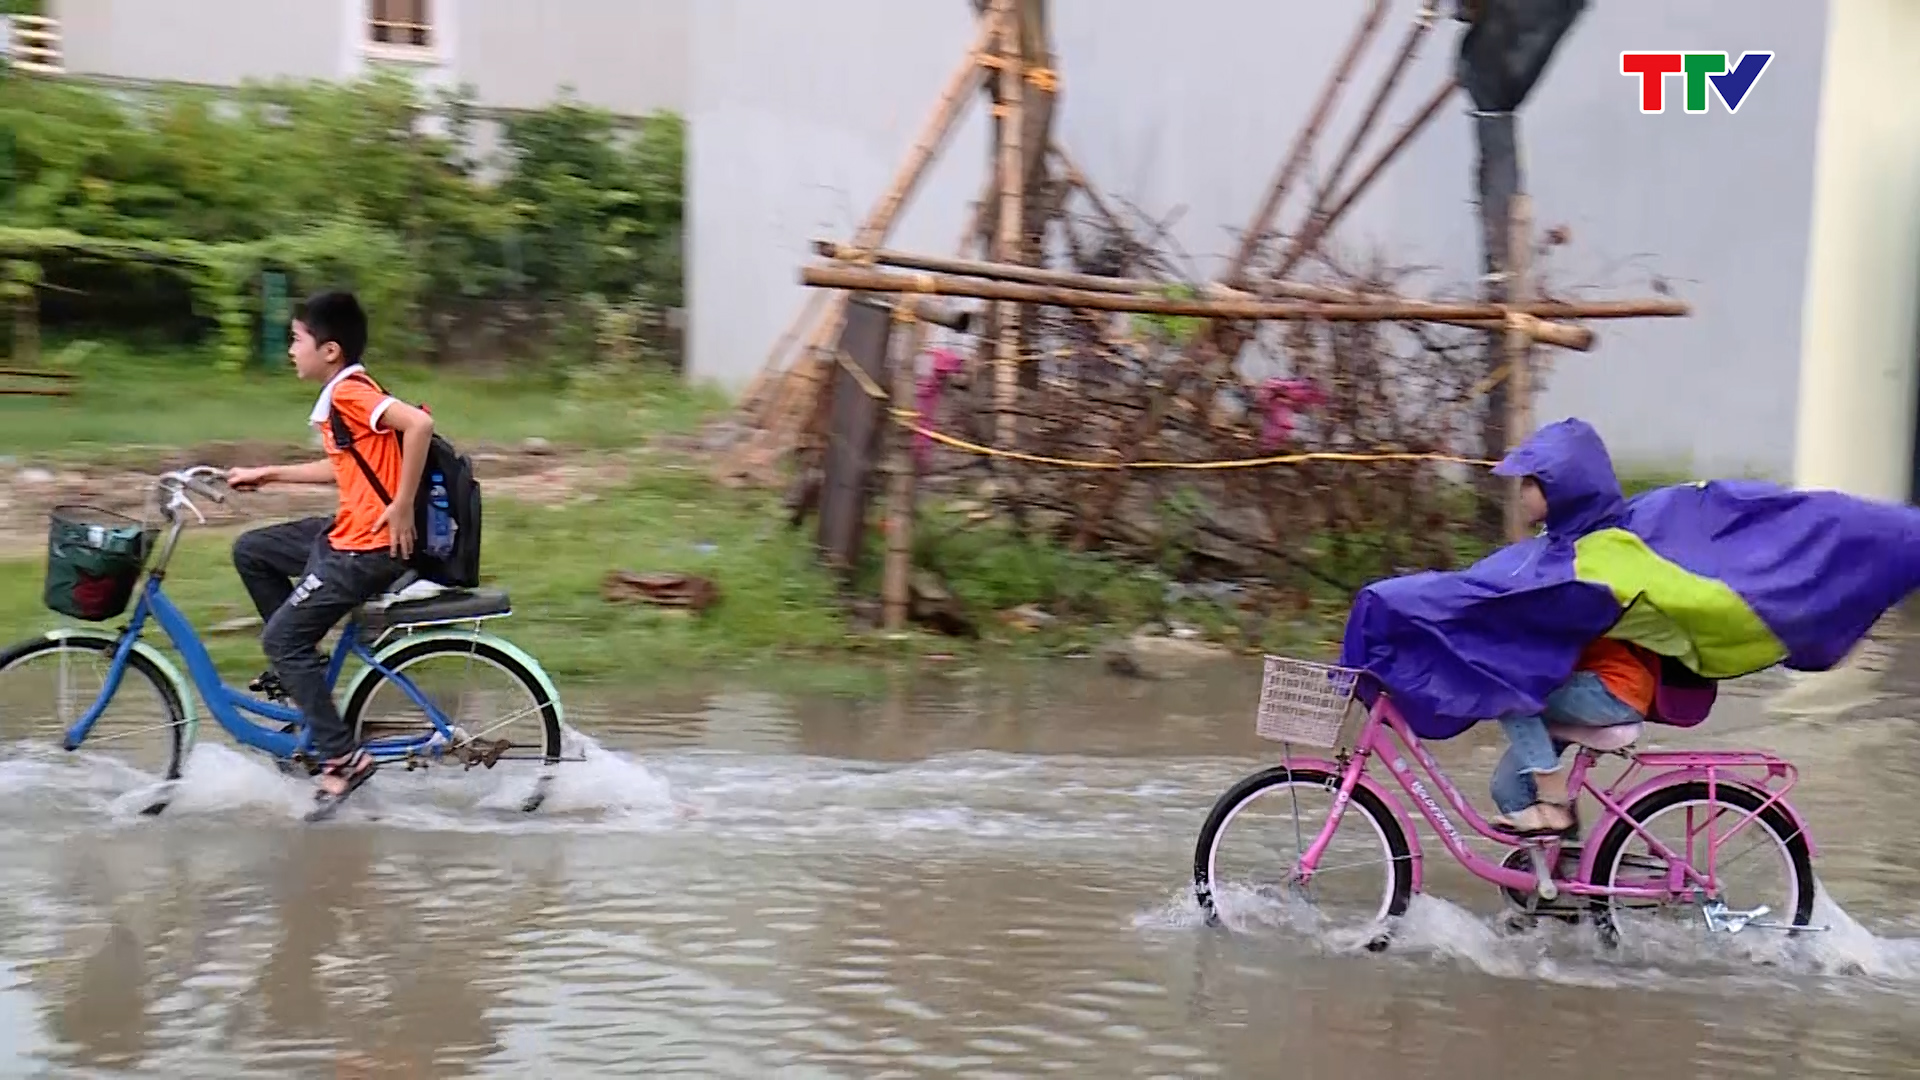 Cần sớm giải quyết tình trạng ngập lụt ở Mặt bằng quy hoạch khu phố 4, phường Quảng Hưng, thành phố Thanh Hóa - Ảnh 2.